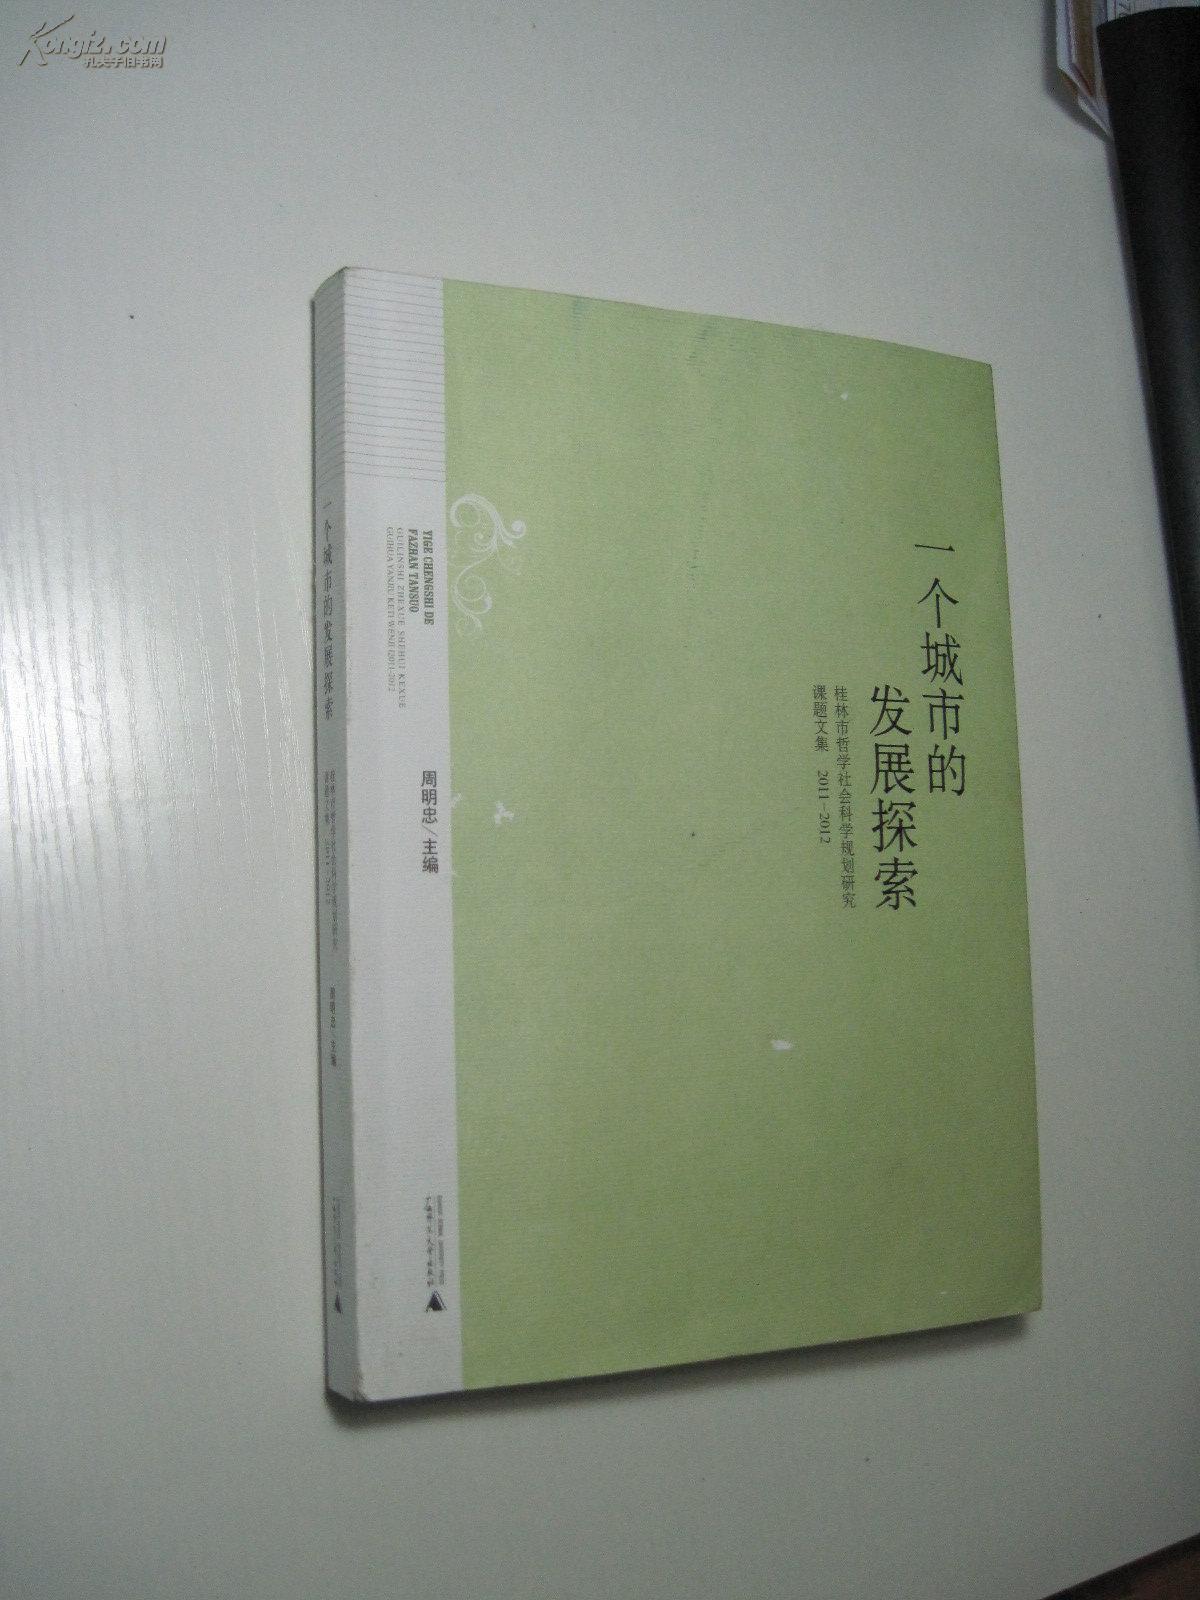 一个城市的发展探索 --- 桂林市哲学社会科学规划研究重点课题文集【2011--2012】